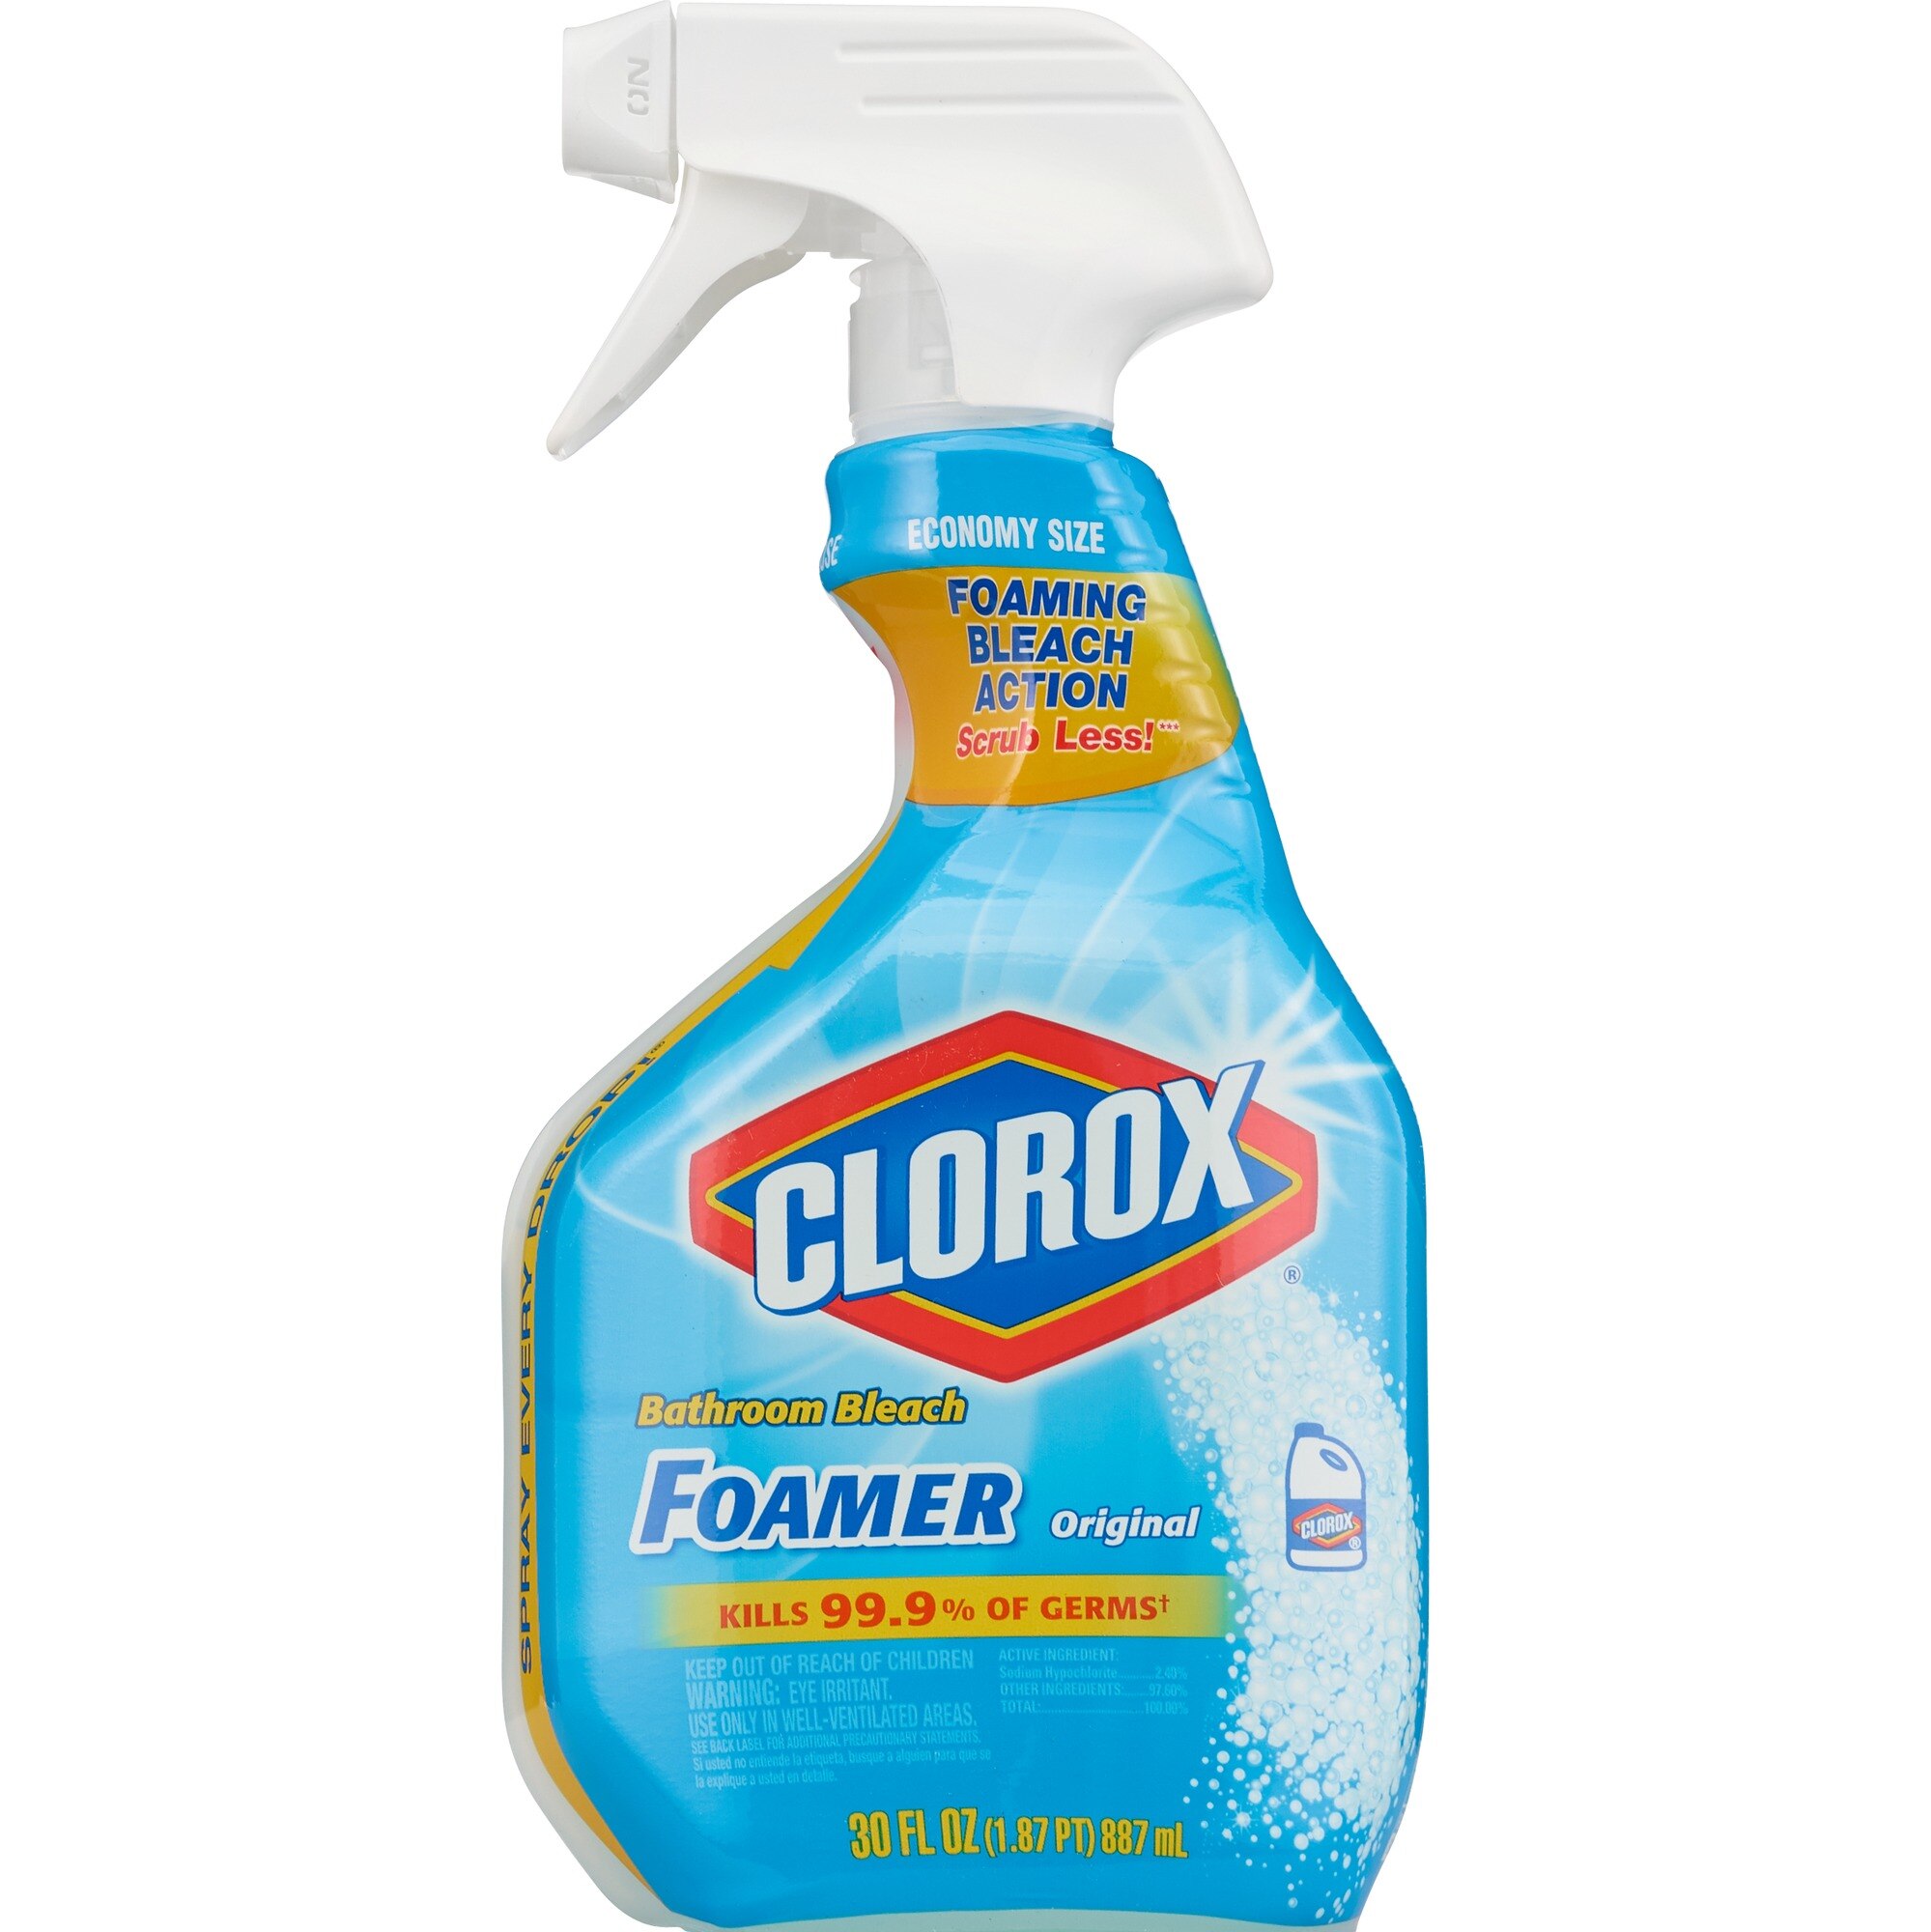 Clorox Bathroom Bleach Foamer, Ocean Mist - 30 fl oz